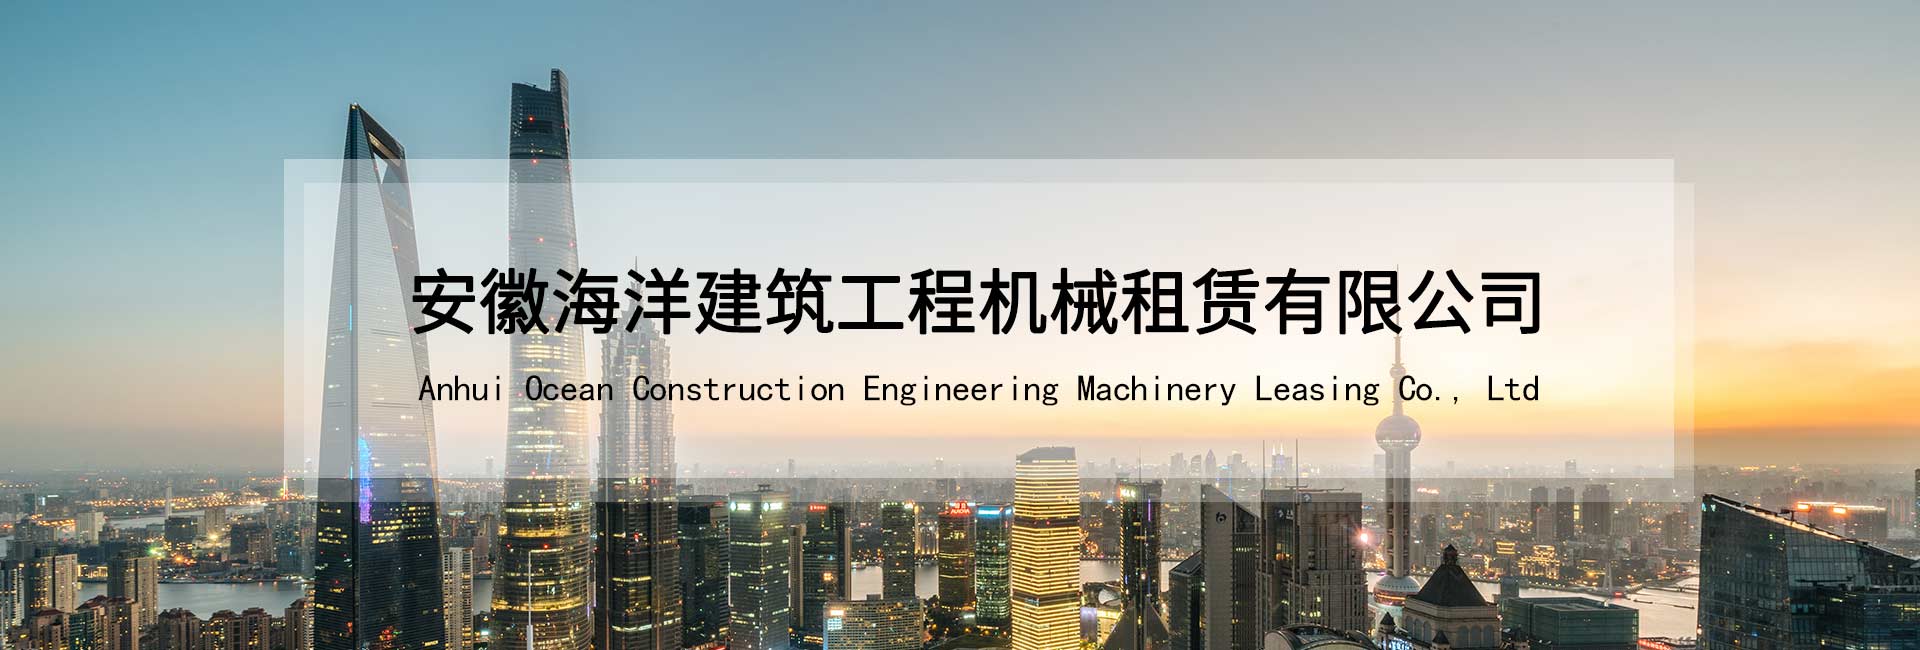 安徽J9九游会建筑工程机械租赁有限公司